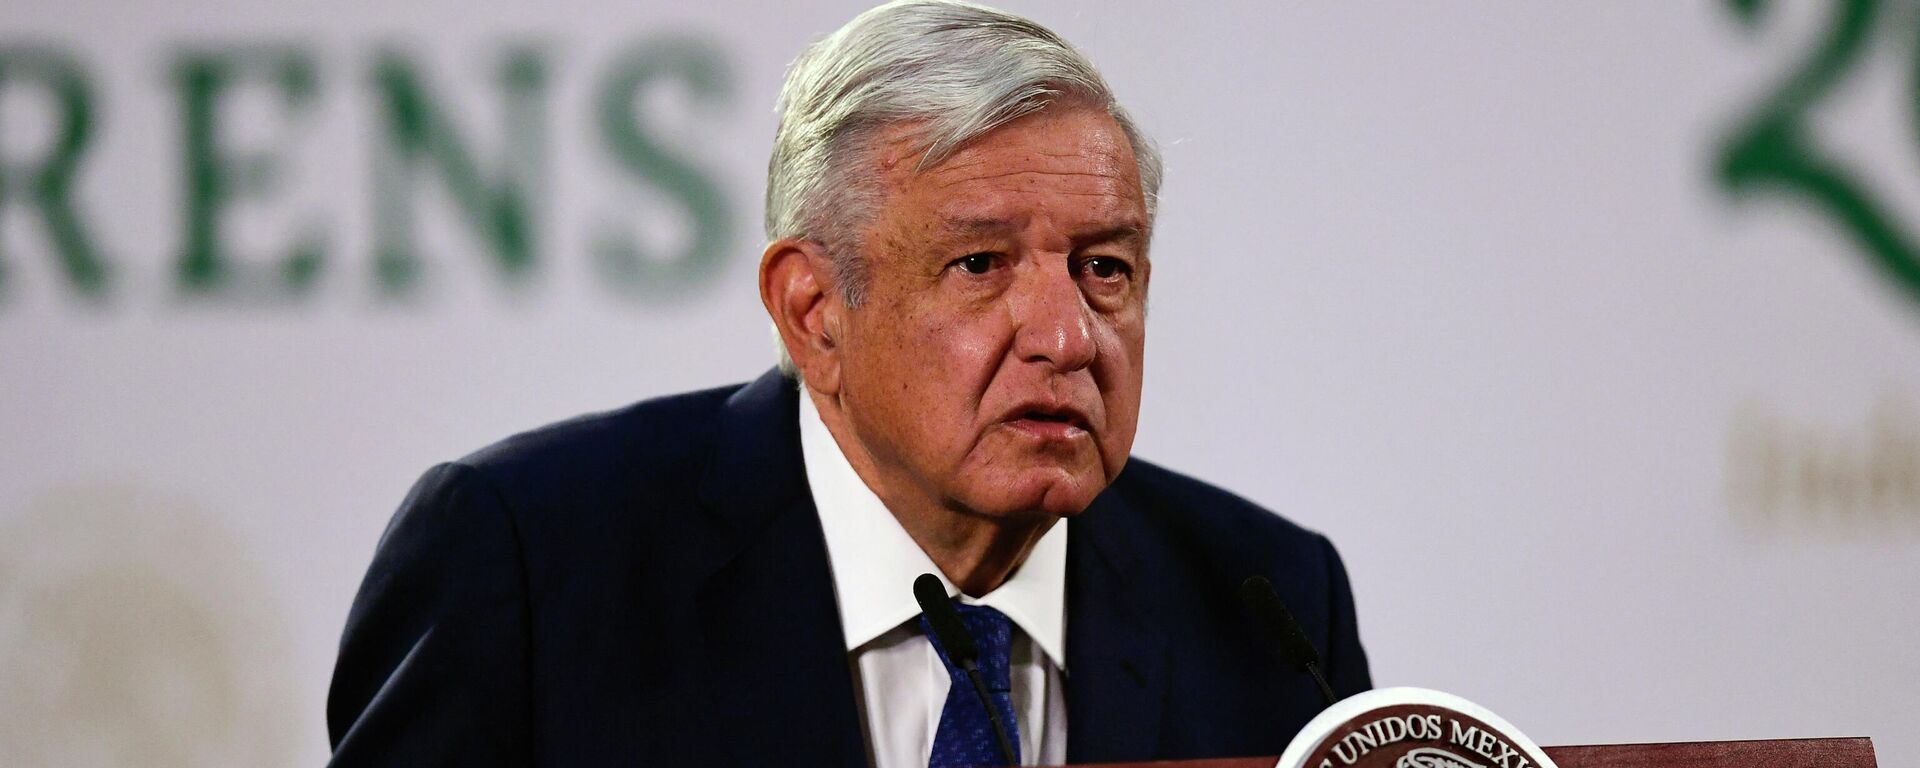 Andrés Manuel López Obrador, presidente de México - Sputnik Mundo, 1920, 14.06.2021